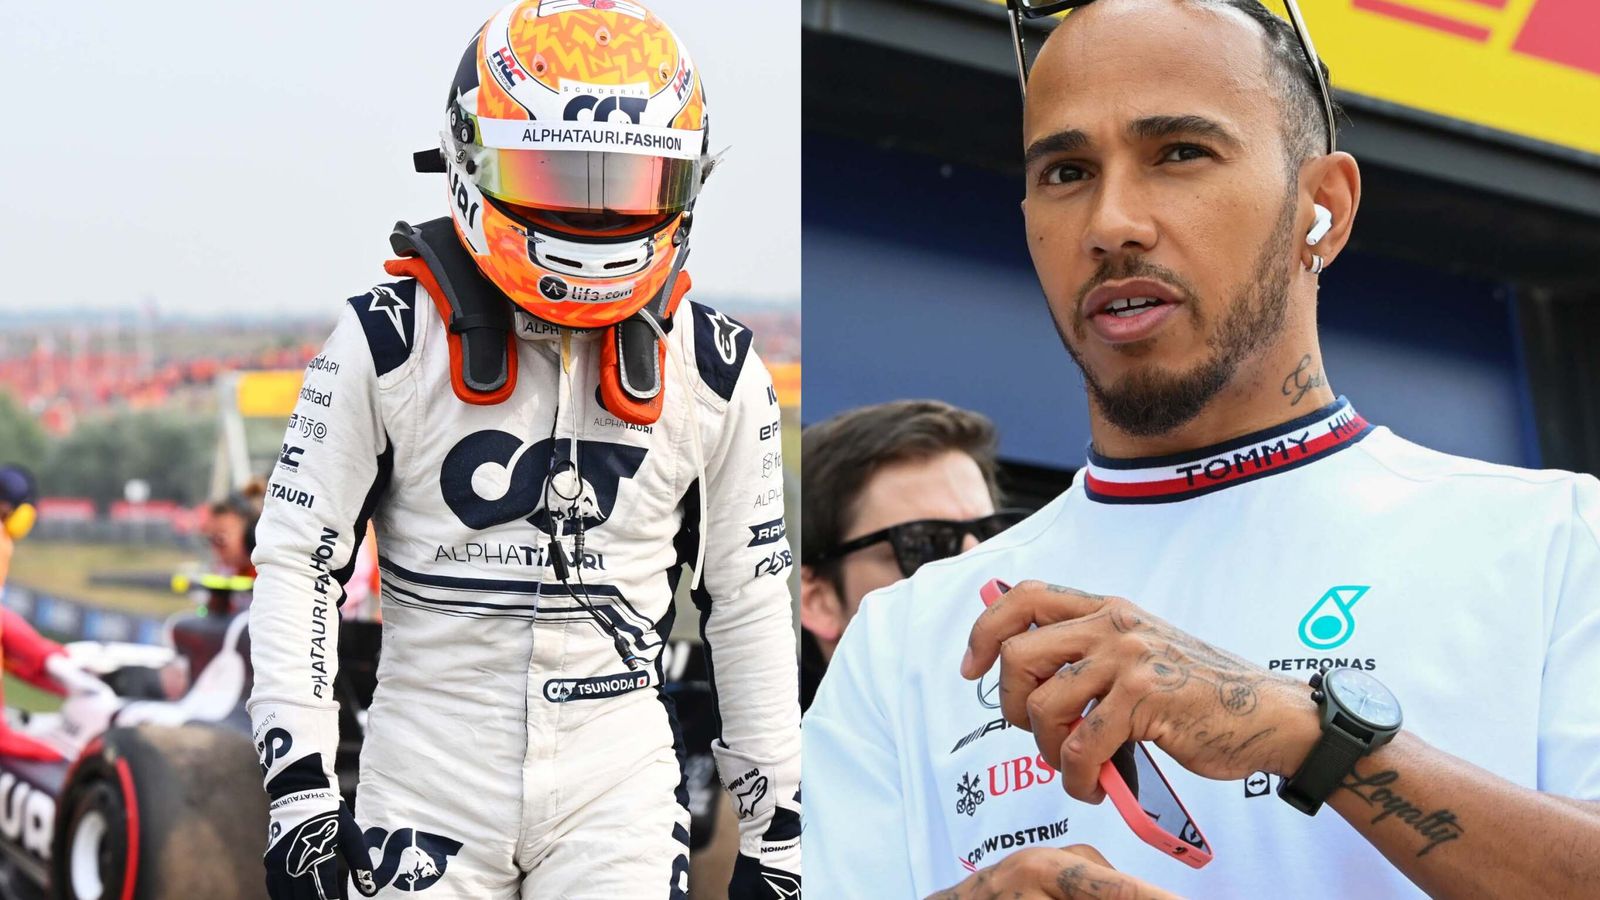 Nederlandse GP: Mercedes’ Toto Wolff Yuki Tsunoda stelt DNF in vraag, zegt Lewis Hamilton wint ‘op’